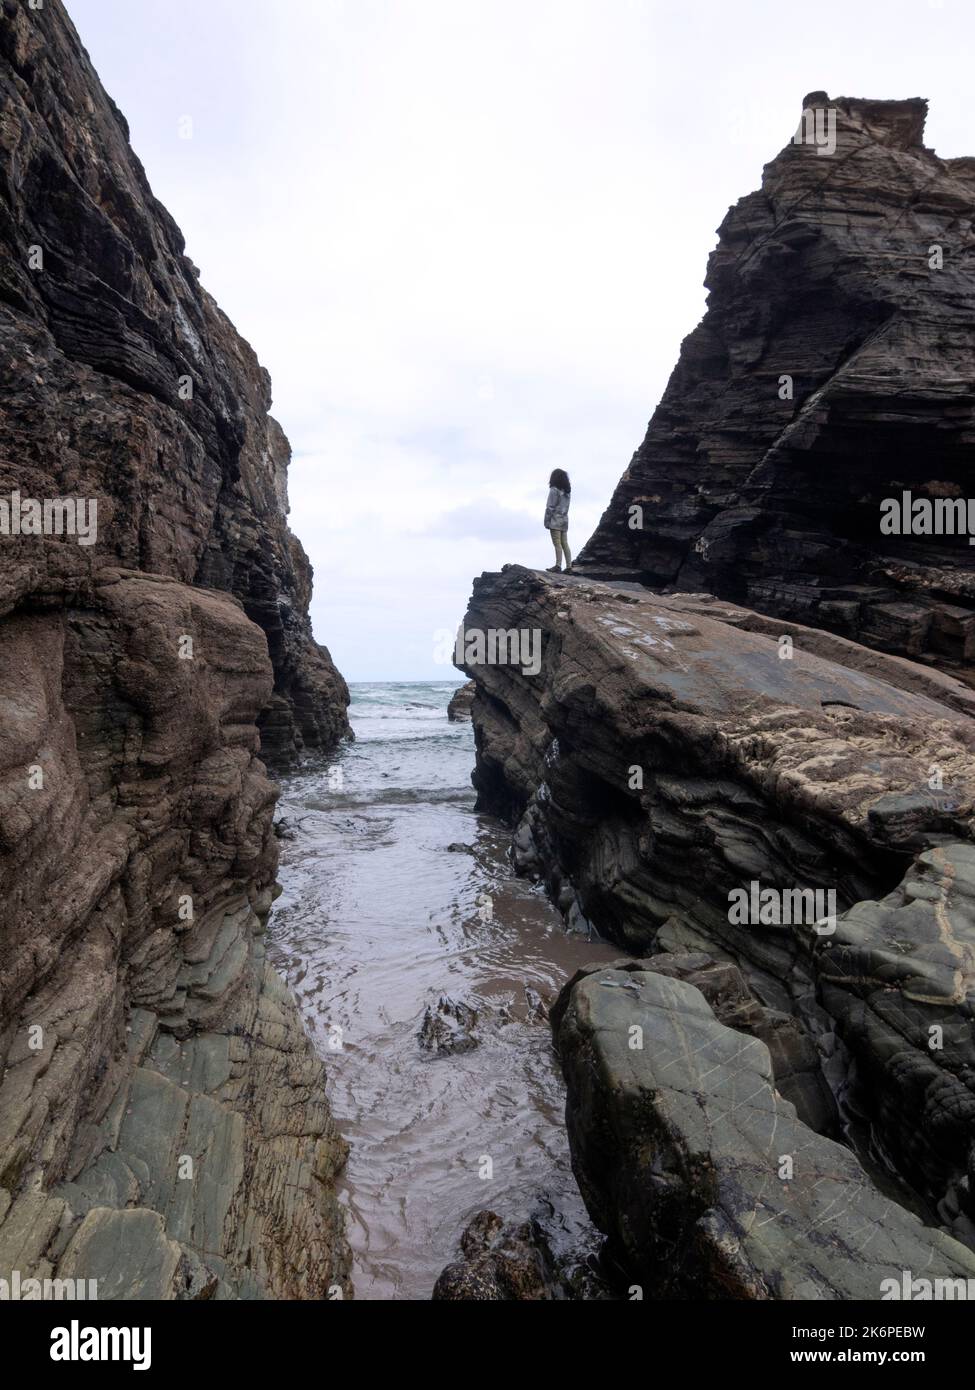 Femelle se tenant seule dans un paysage de falaises et de rochers à marée basse avec la mer en arrière-plan. Banque D'Images